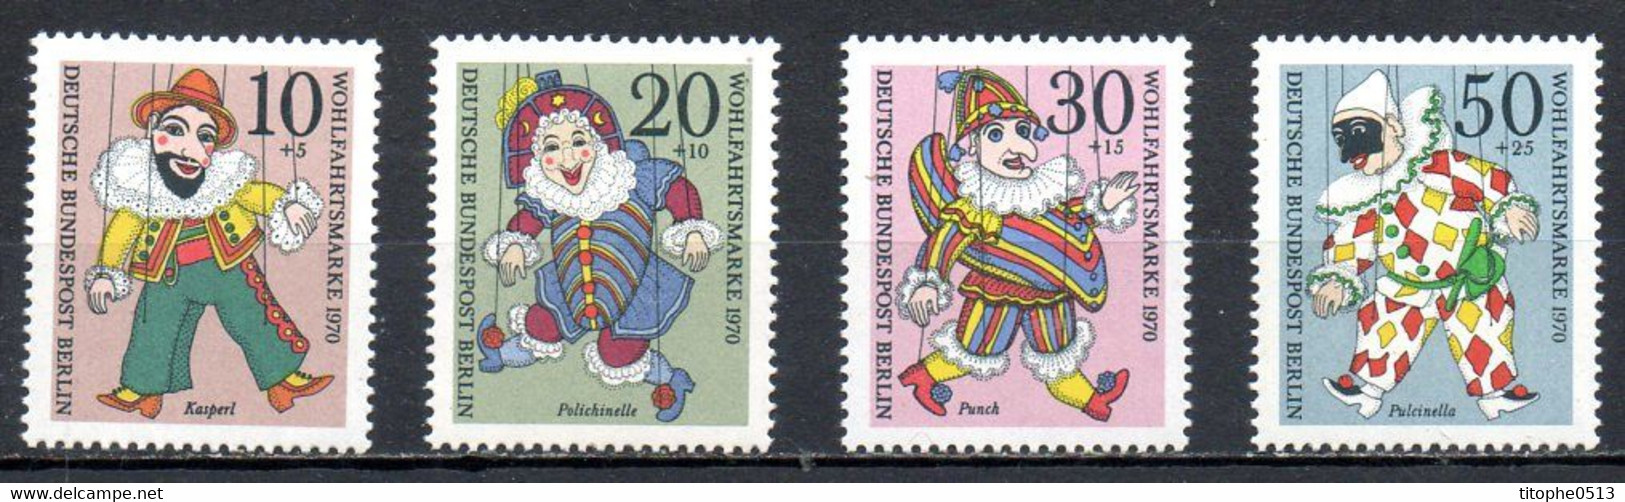 ALLEMAGNE BERLIN. N°335-8 De 1970. Marionnettes. - Marionnettes